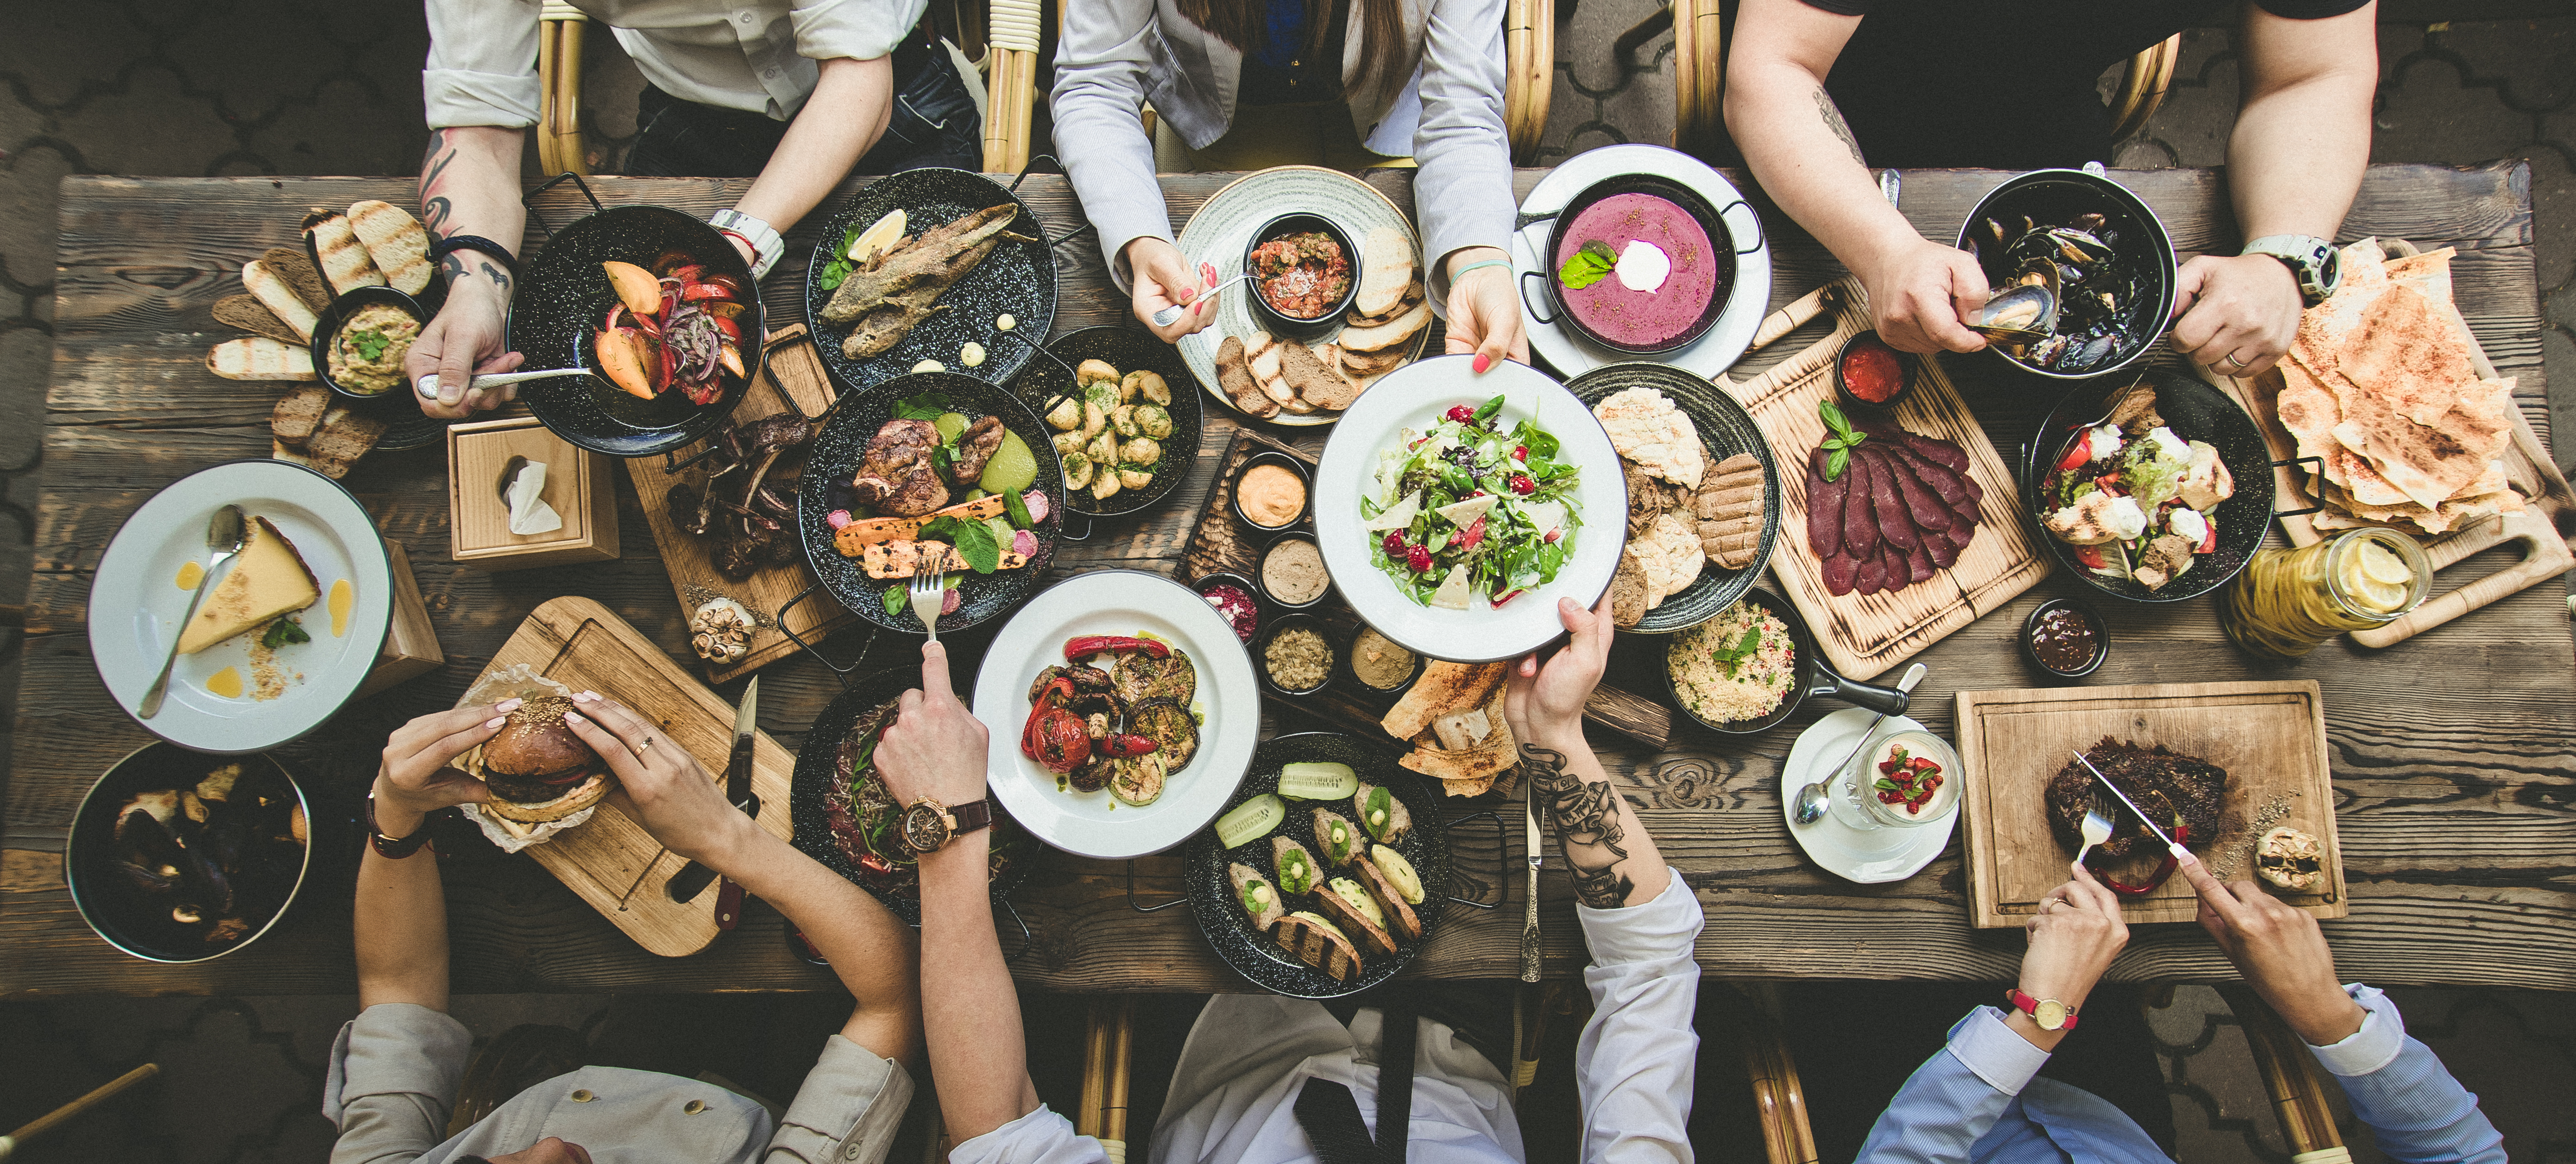 Un dîner extravagant au restaurant | Source : Shutterstock